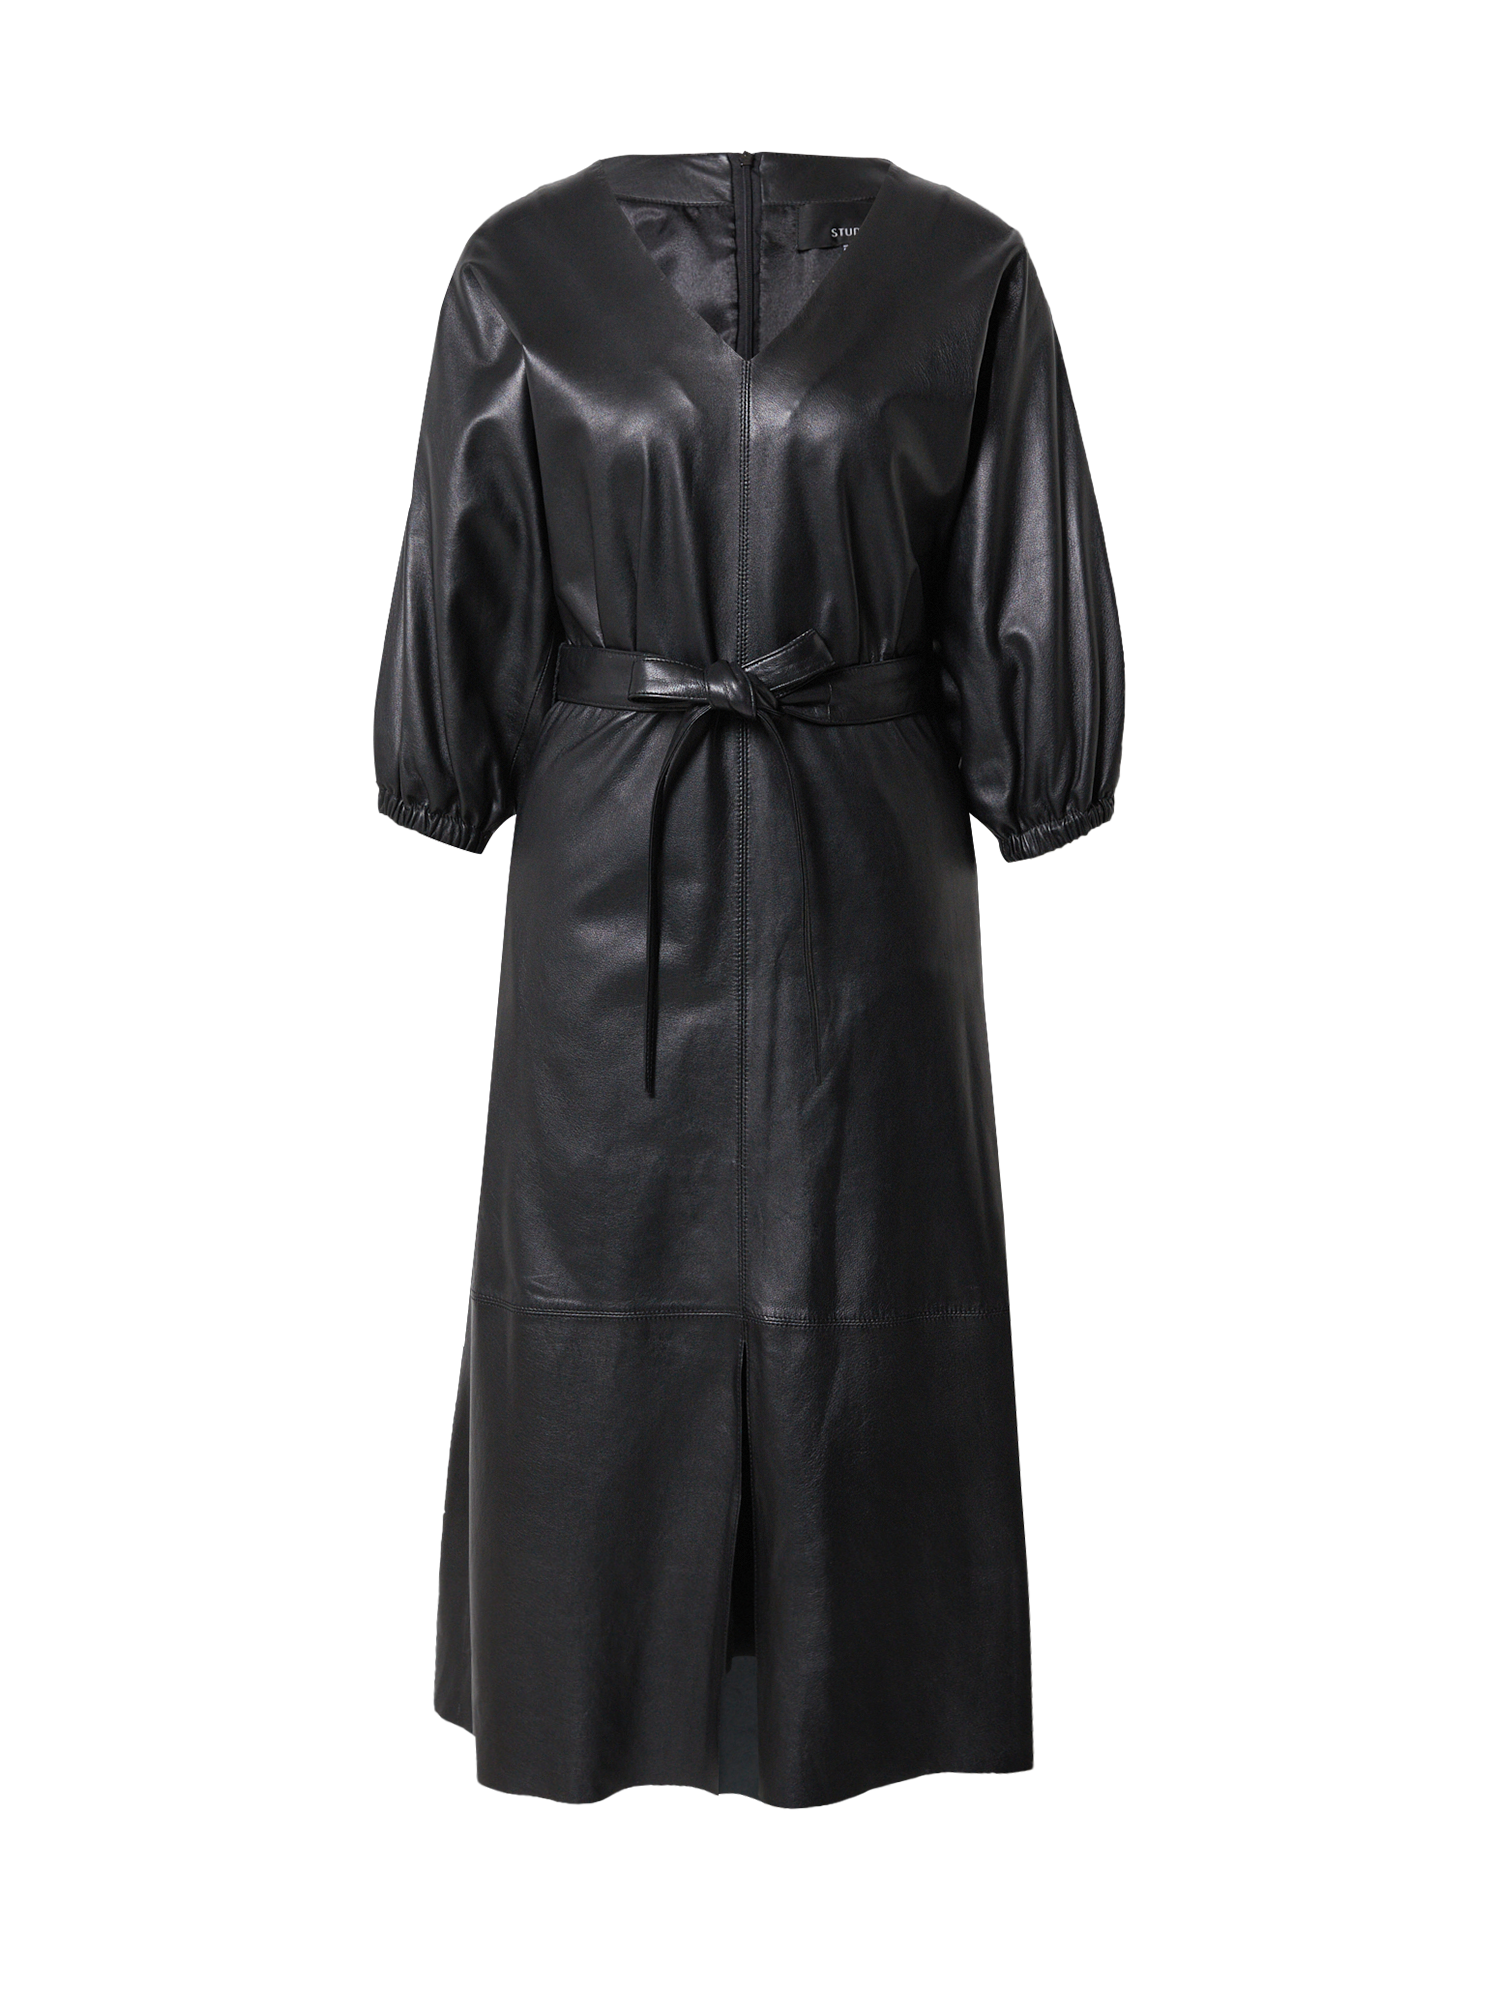 Sukienki Kobiety Studio AR Sukienka MOLLY w kolorze Czarnym 